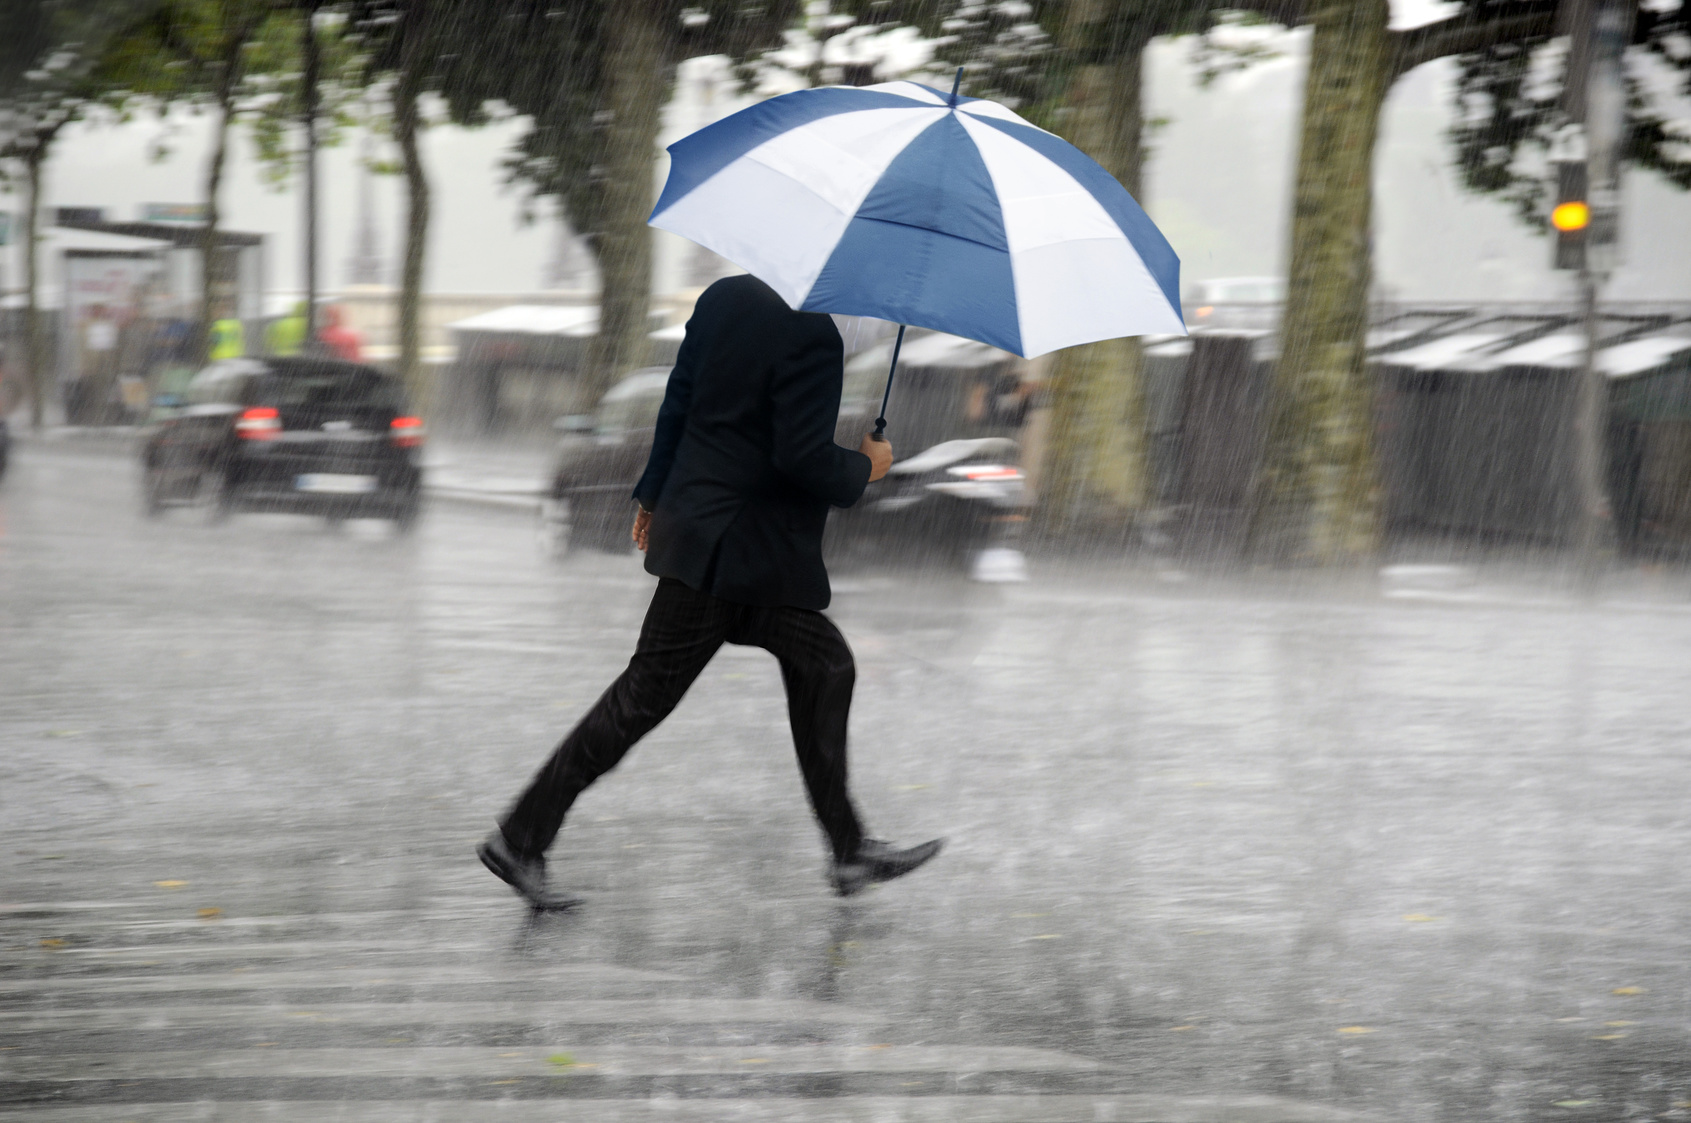 Через час дождь пойдет. Человек с зонтом. Человек под дождем. Мужчина с зонтом под дождем. Человек идет с зонтом.